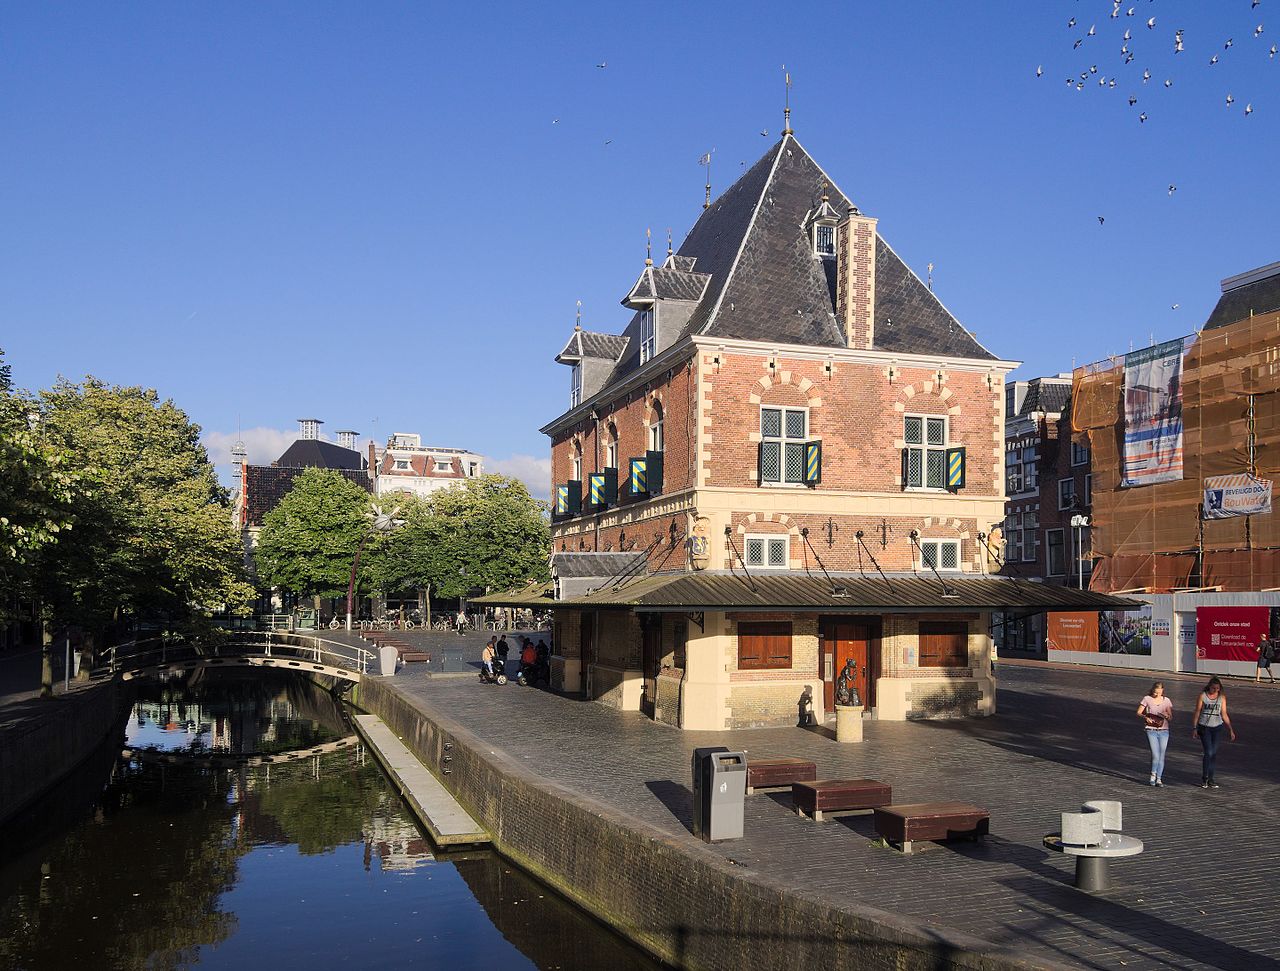 Leeuwarden-Friesland, capitala europeană a culturii în 2018. Ghid complet – istorie, cazare, transport, mâncare, obiective turistice